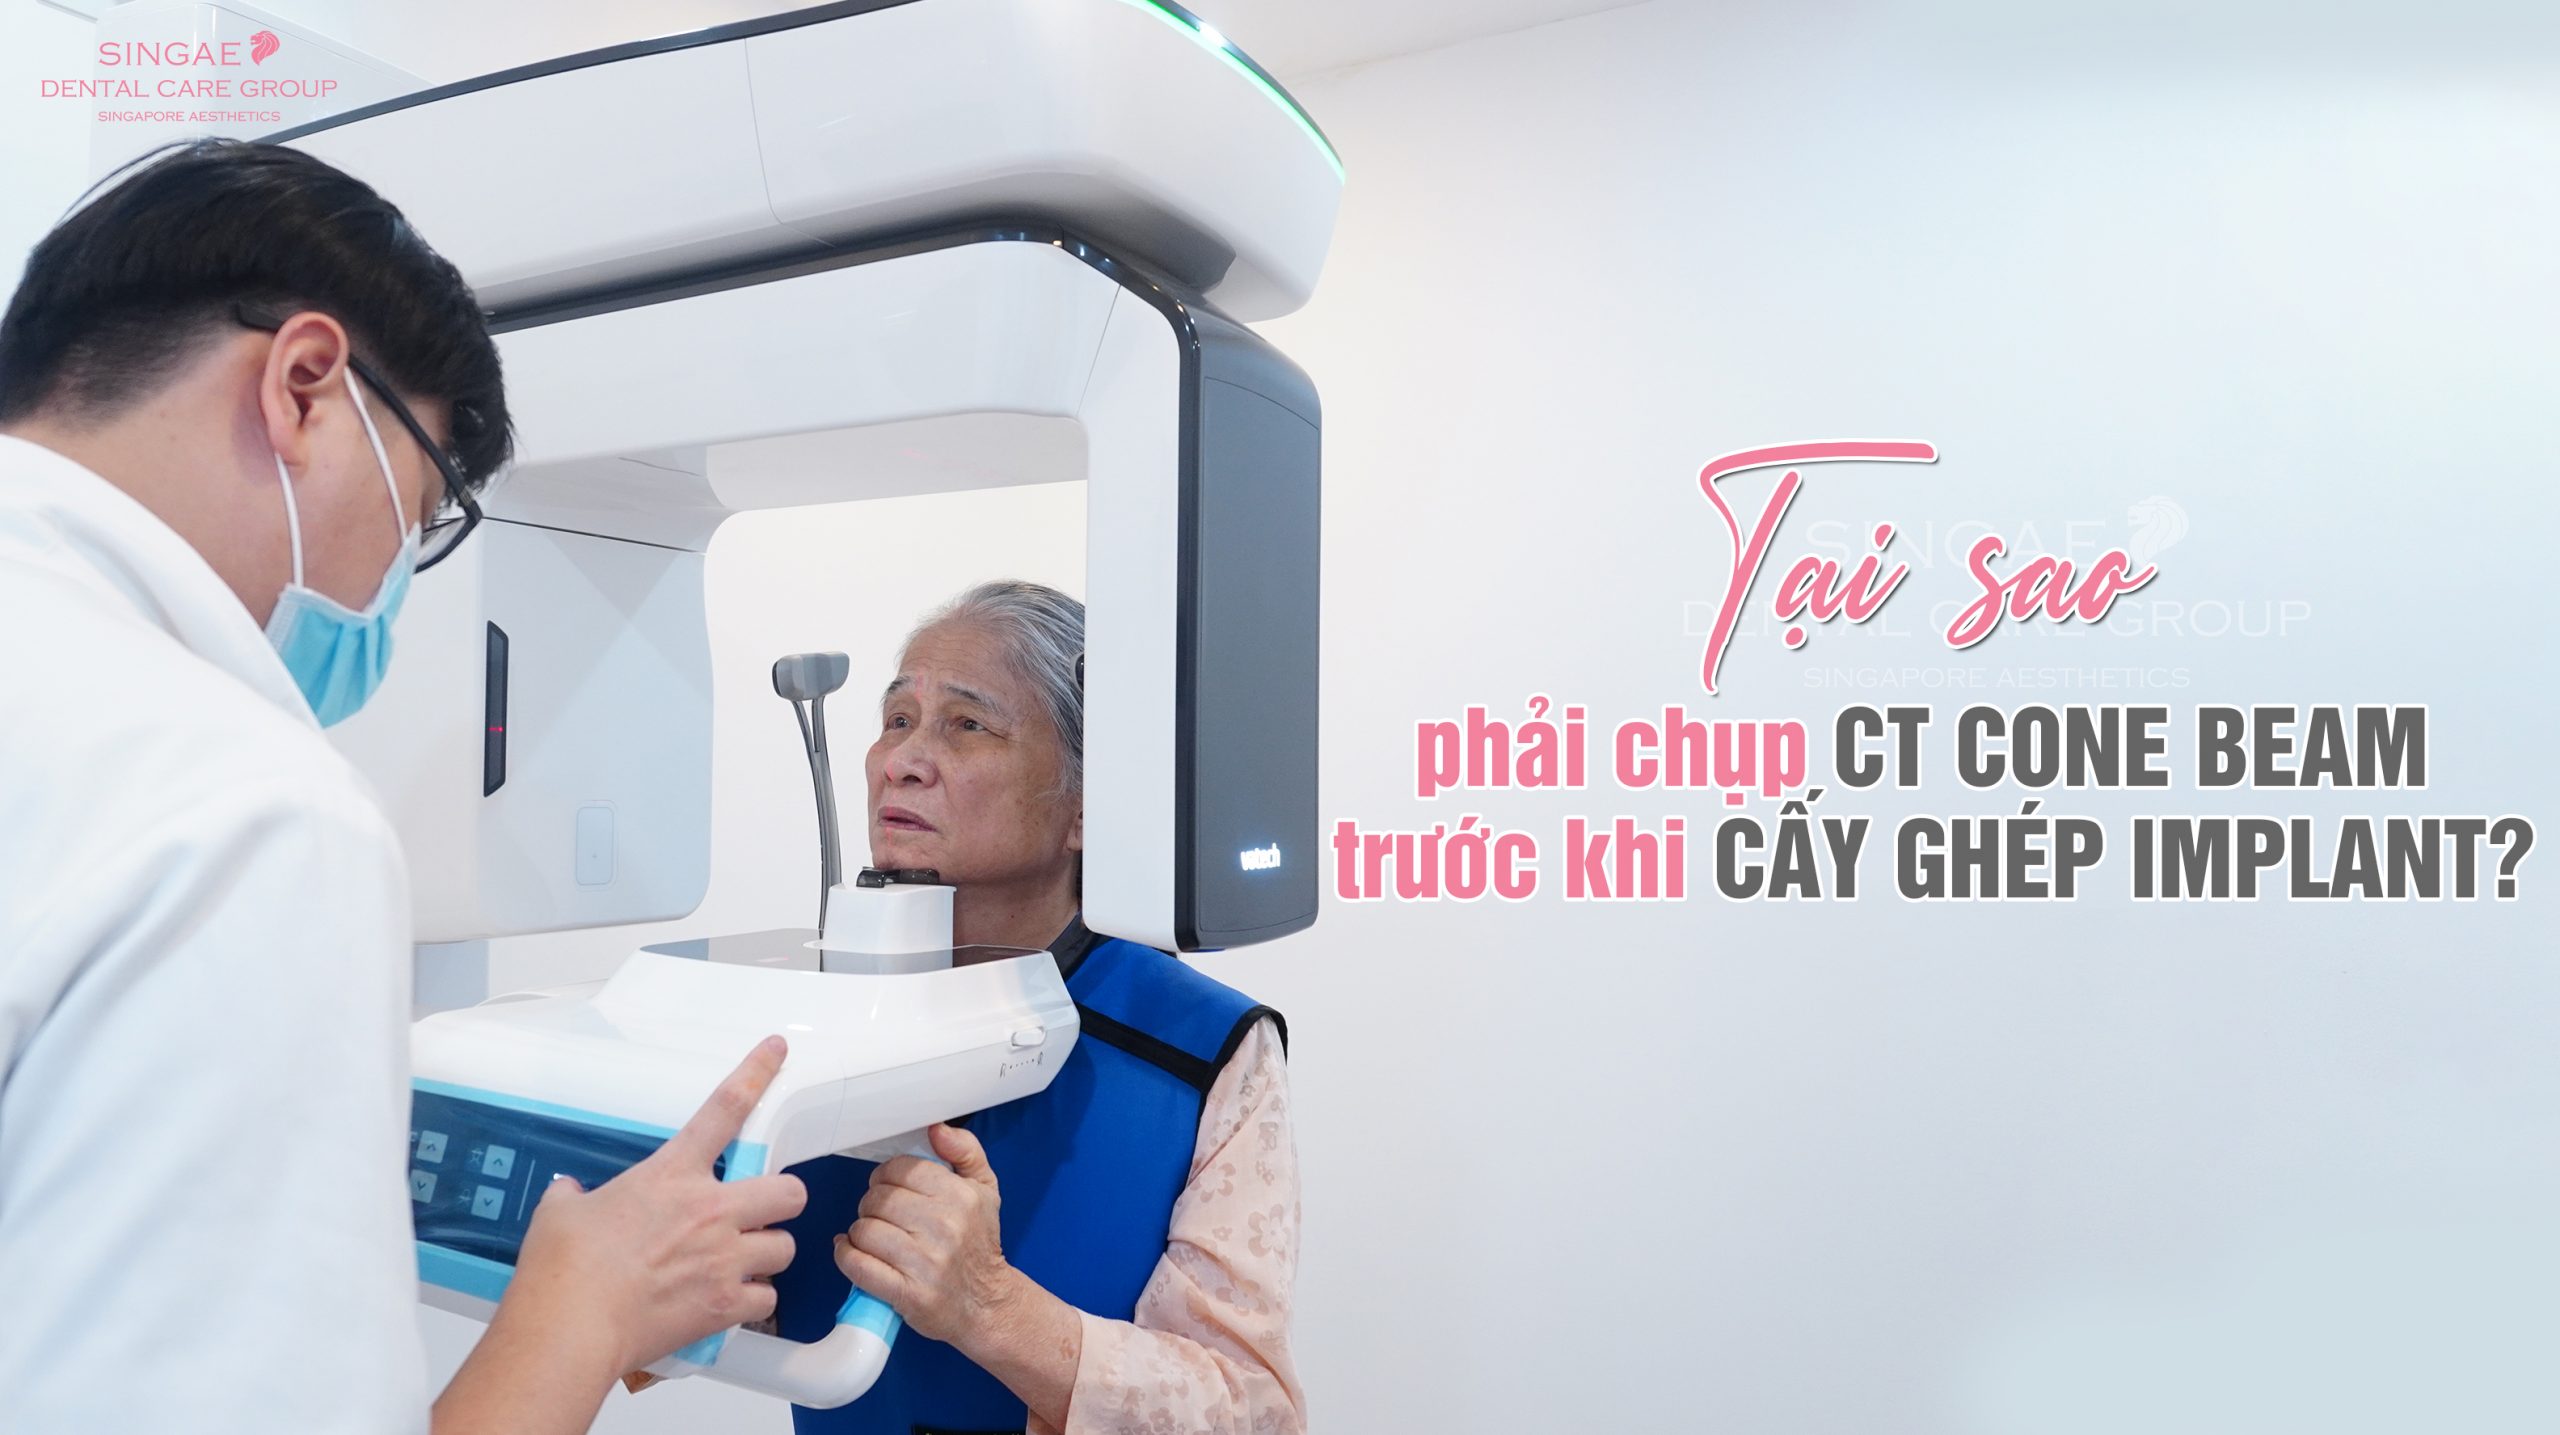 Tại sao phải tiến hành chụp CT Cone beam trước khi cấy ghép Implant?